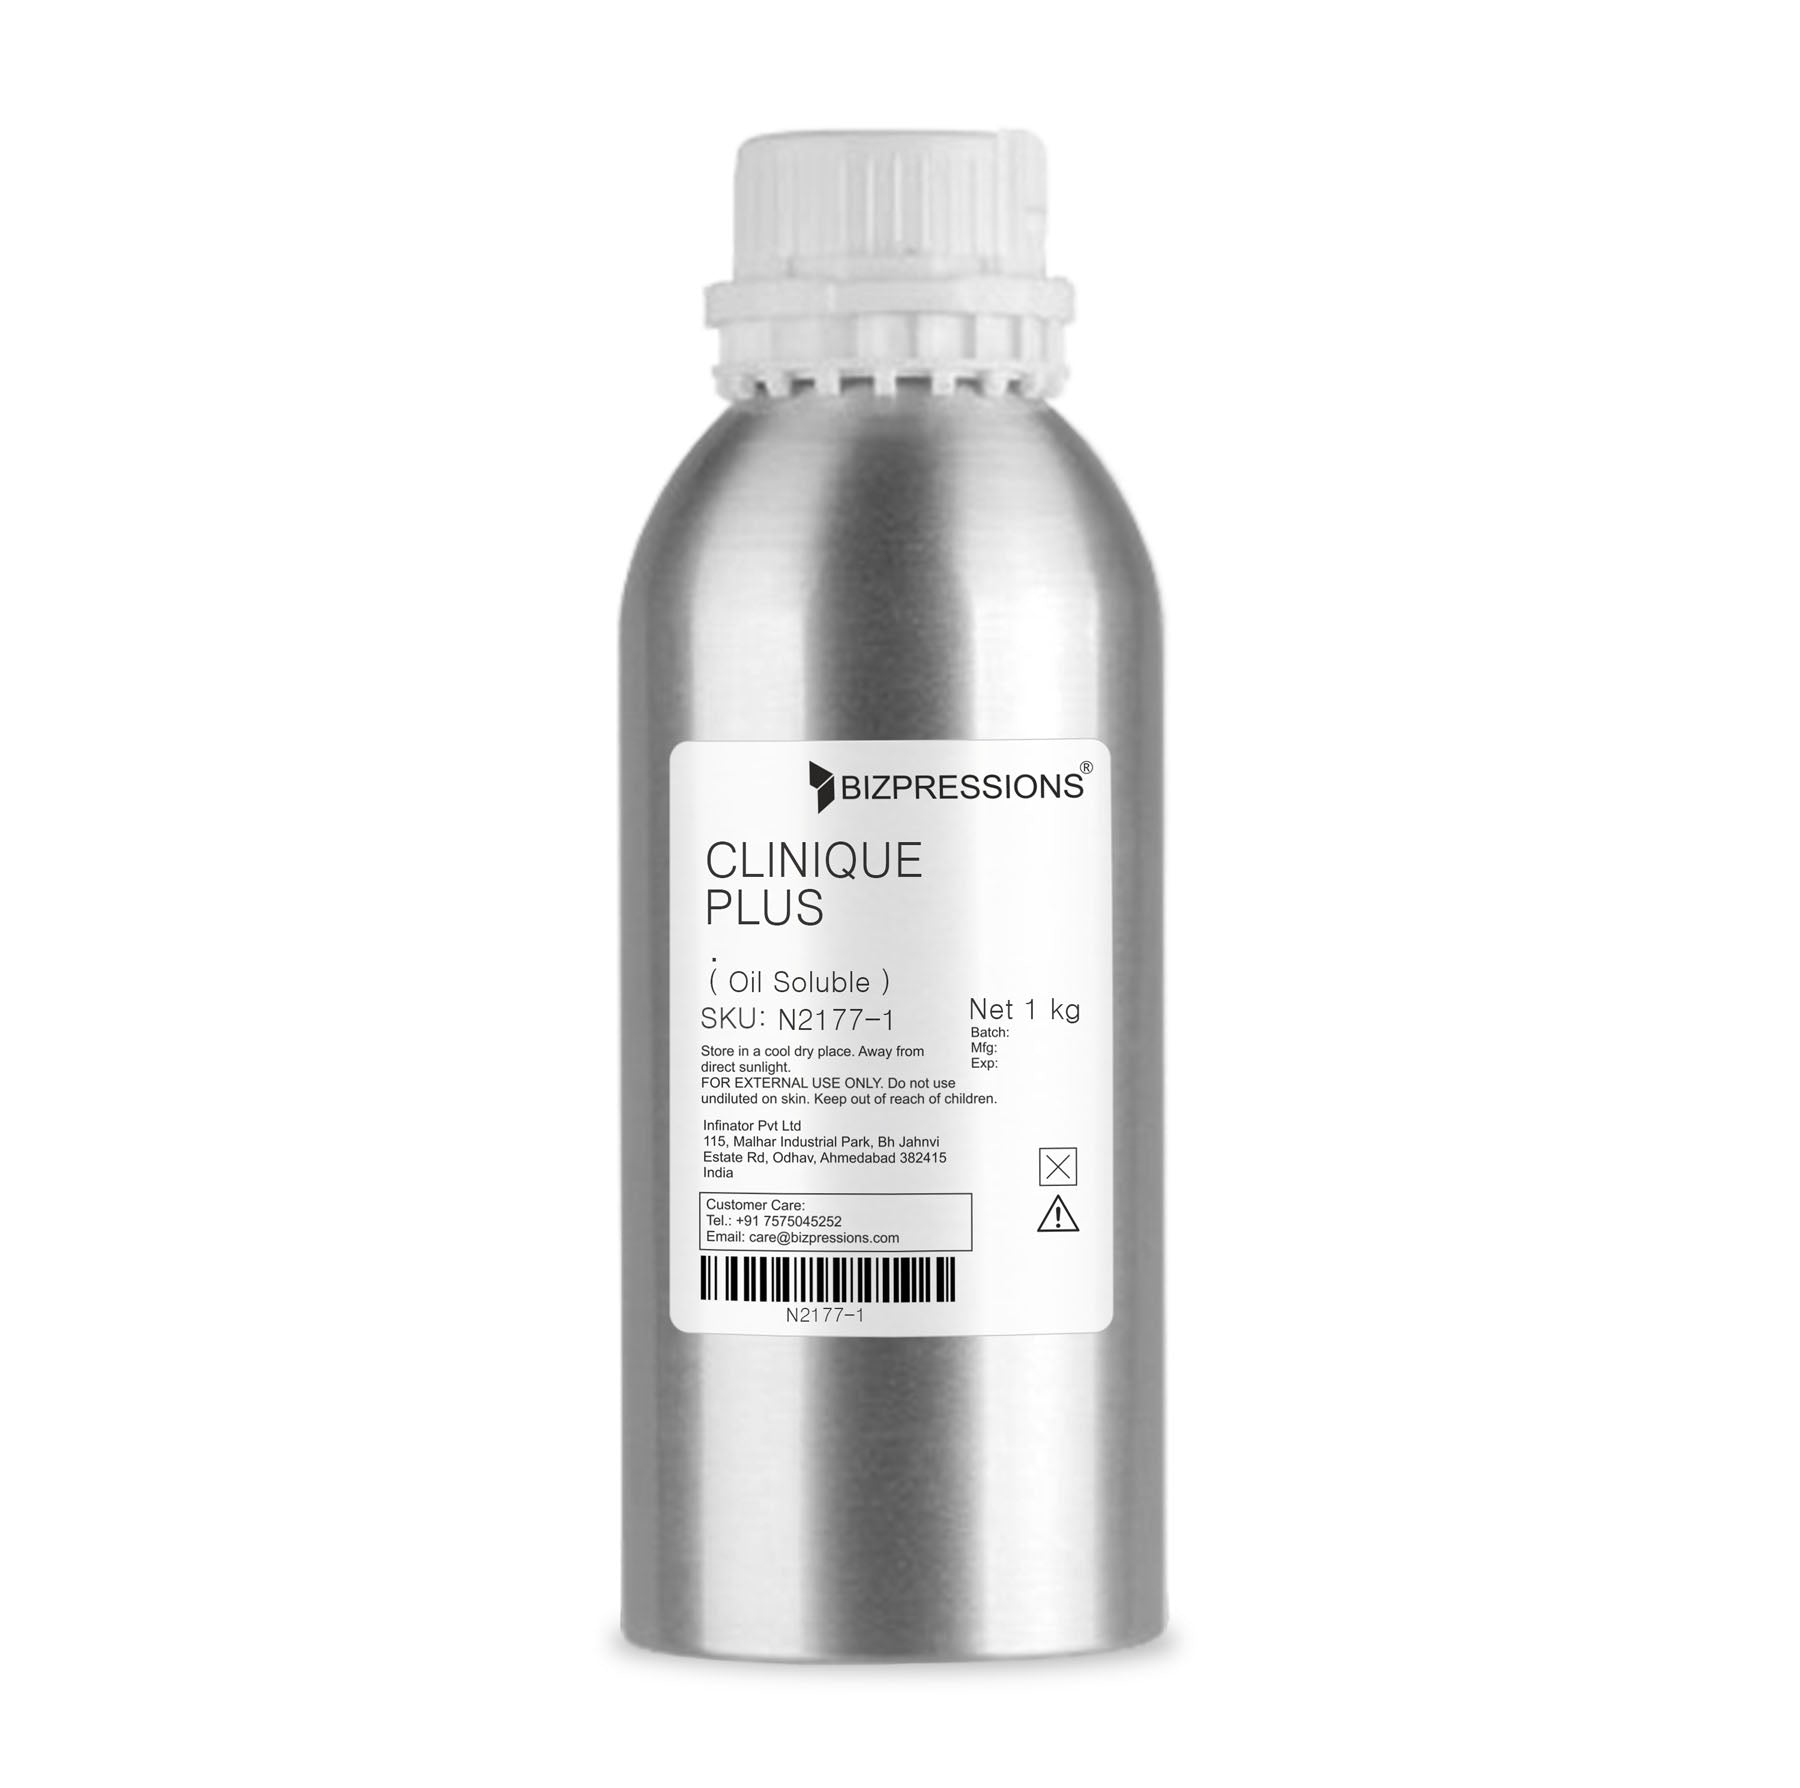 CLINIQUE PLUS - Fragrance ( Oil Soluble ) - 1 kg